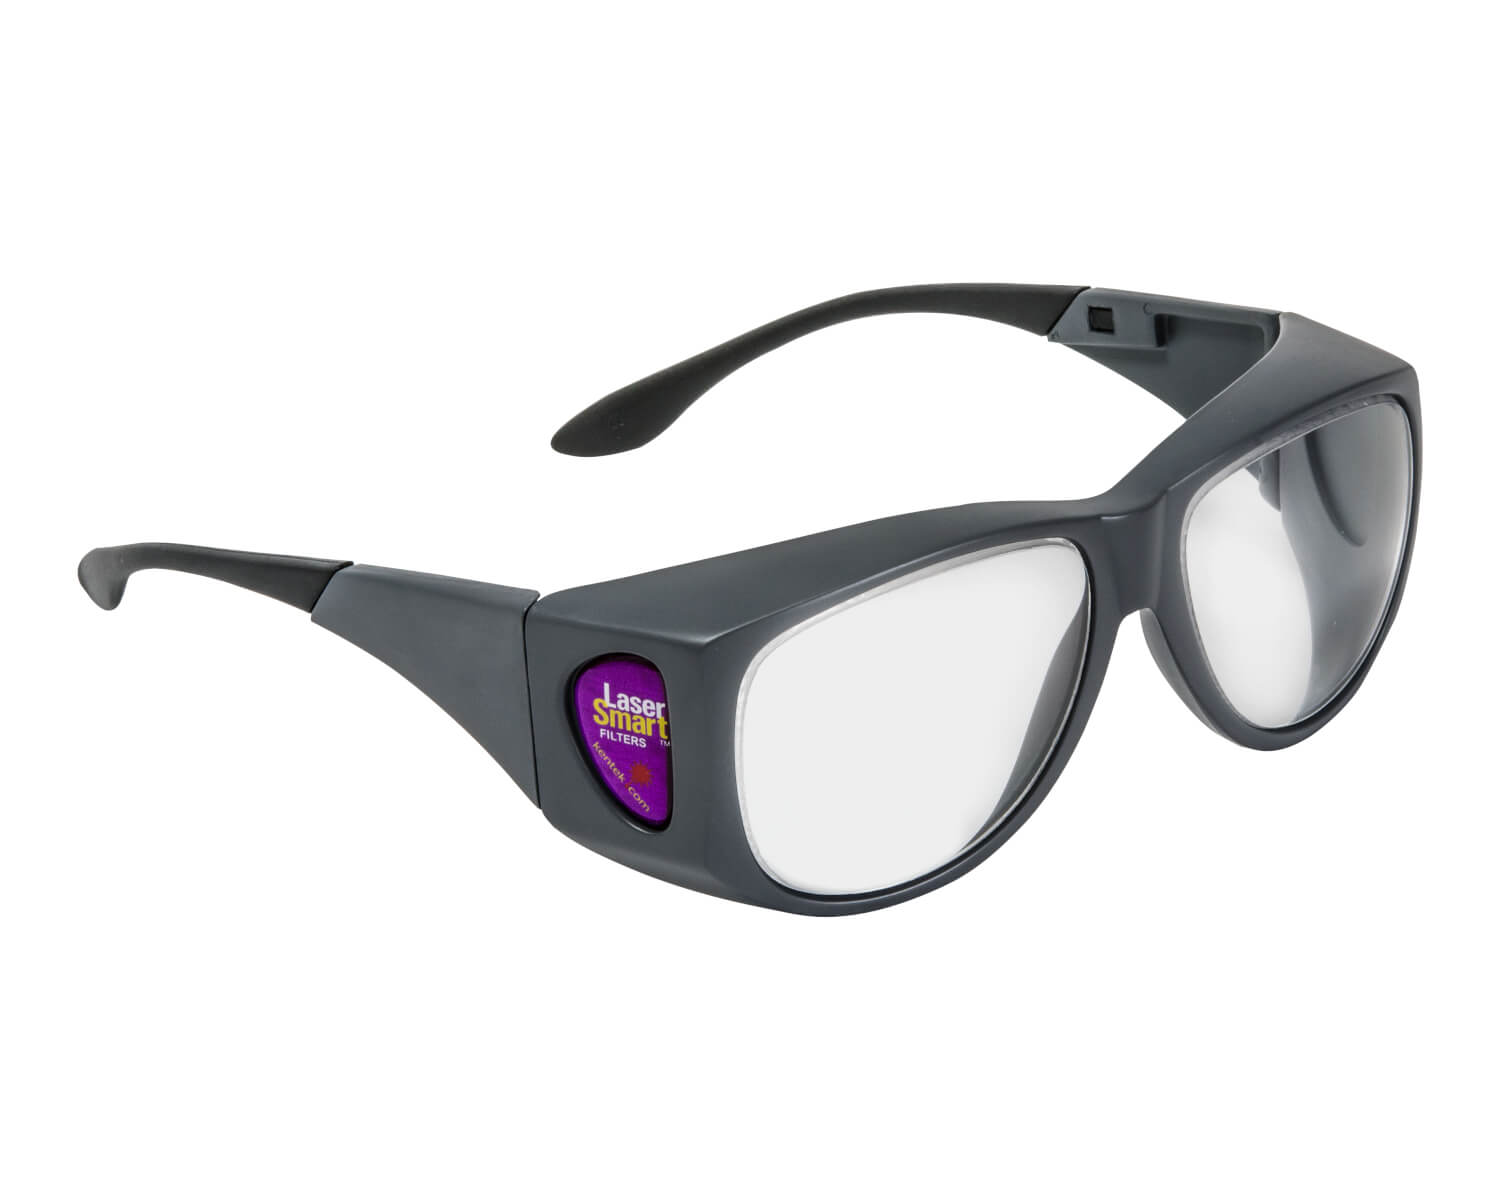 KXL-015C Laser Safety Glasses